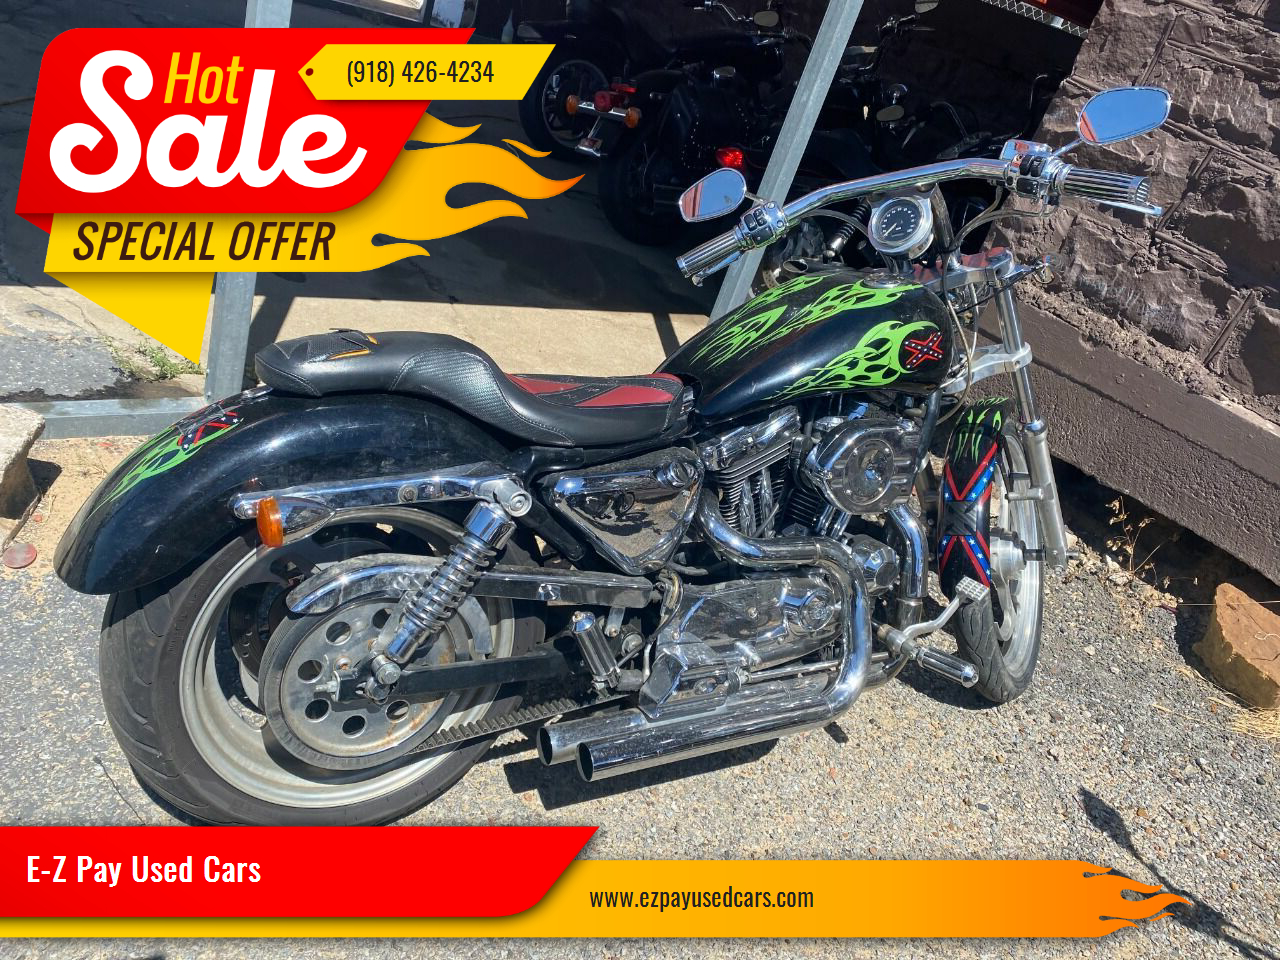 Harley Davidson For Sale In Oklahoma Carsforsale Com